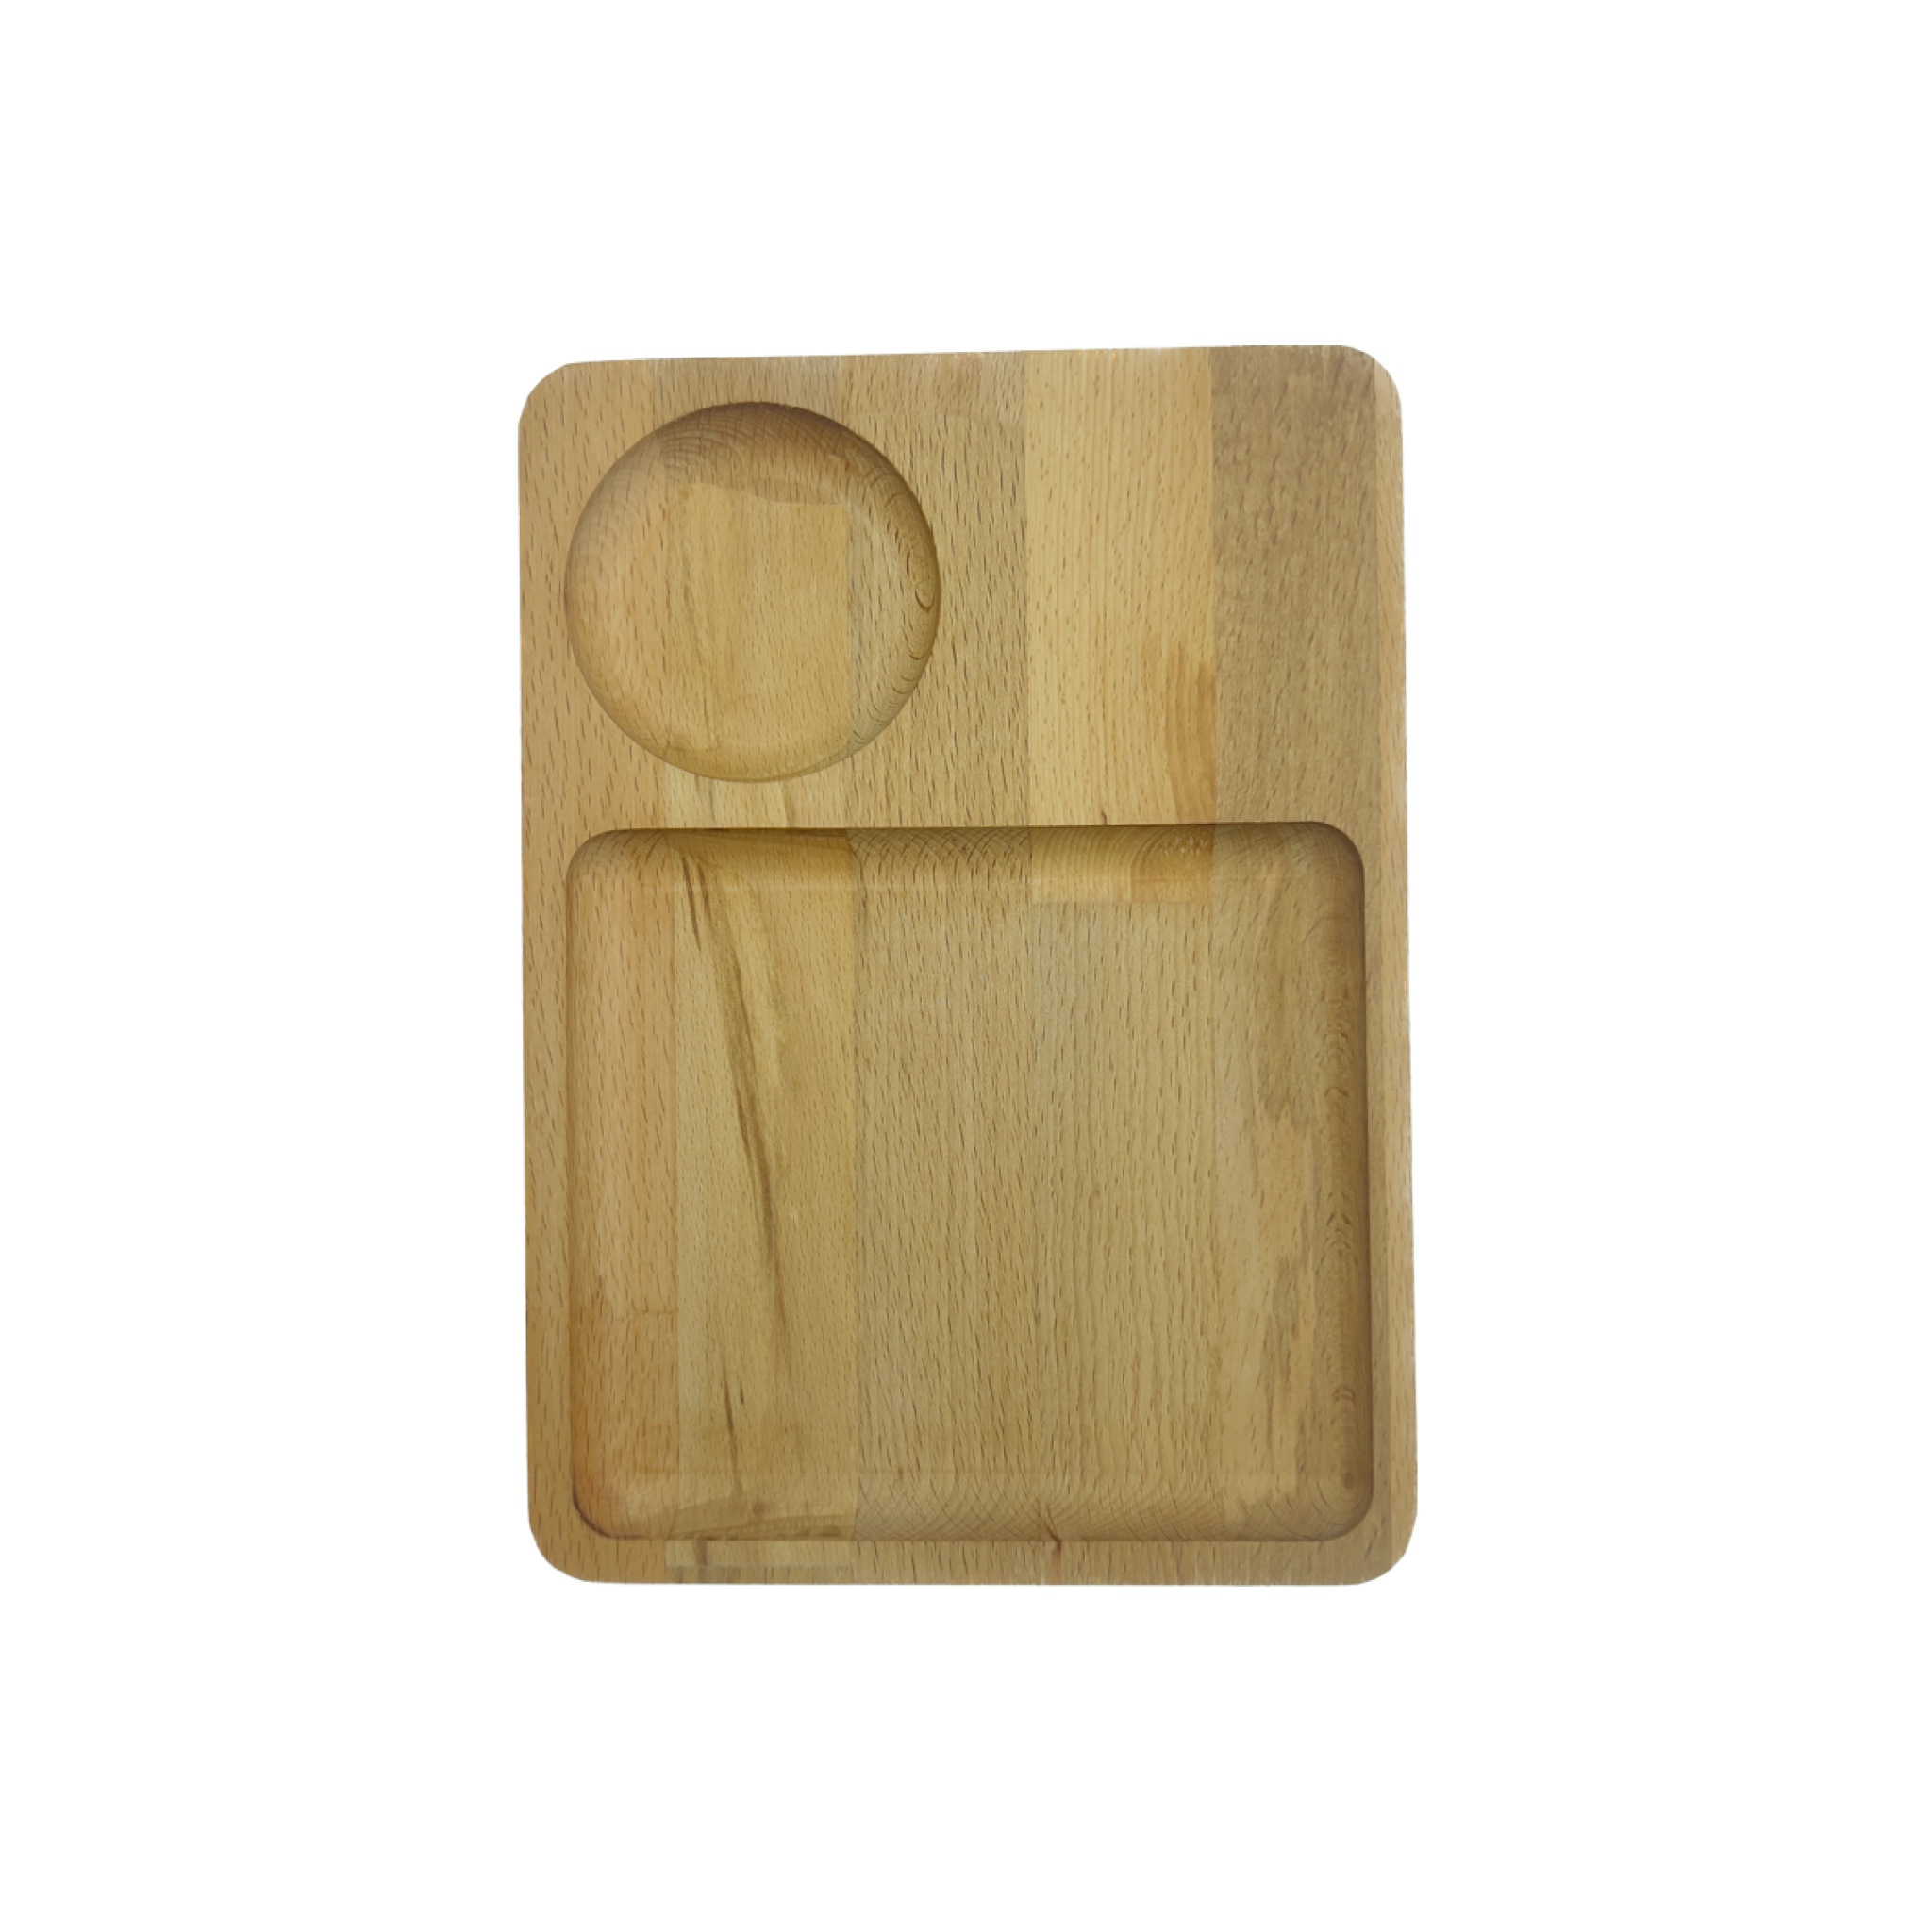 ظرف سرو مدل چوبی کد 015